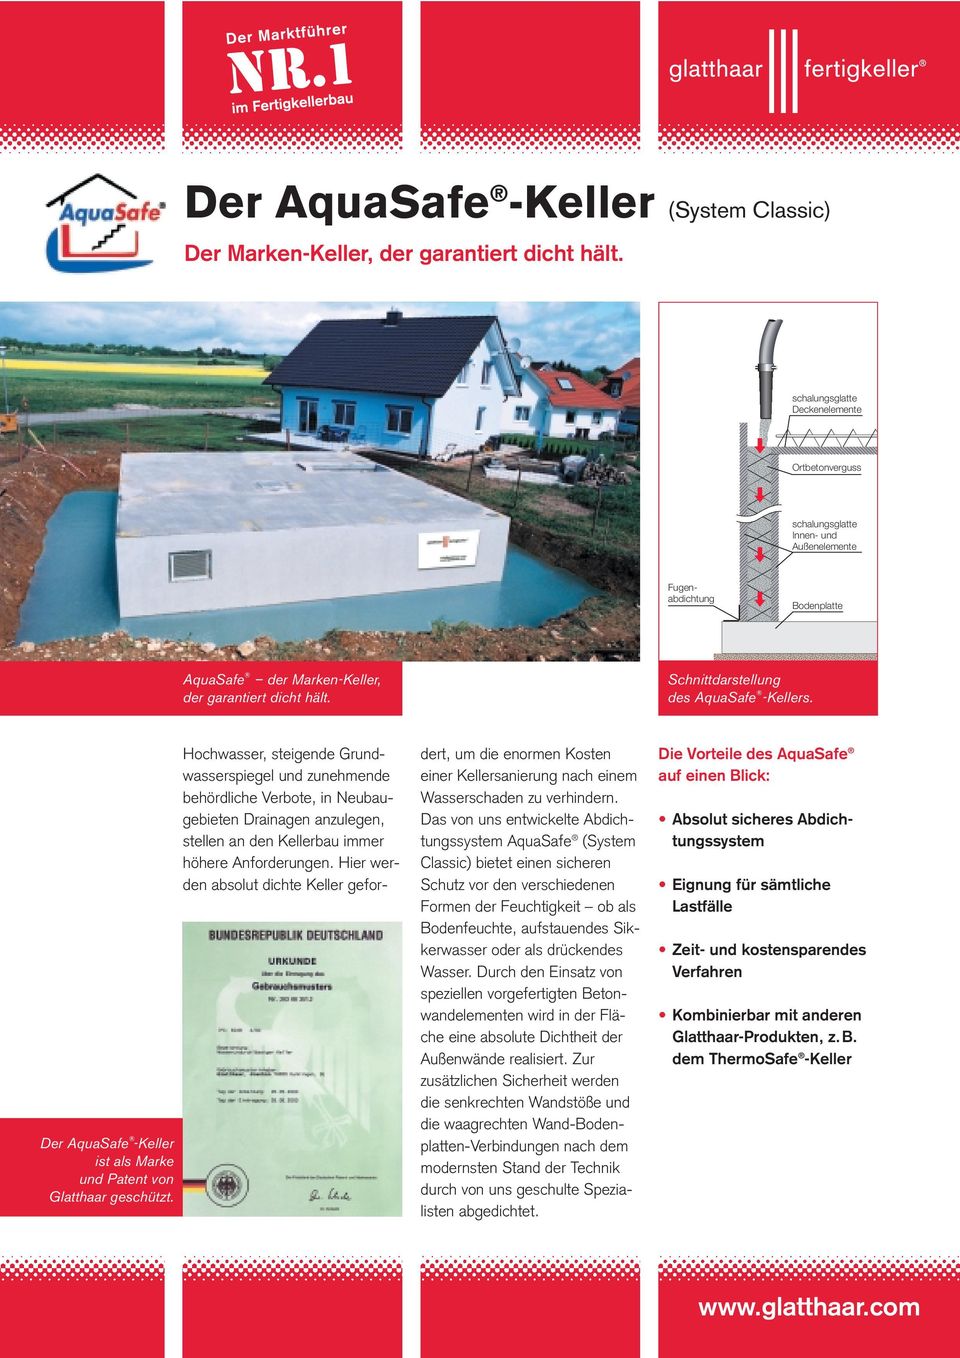 hält. Schnittdarstellung des AquaSafe -Kellers. Der AquaSafe -Keller ist als Marke und Patent von Glatthaar geschützt.